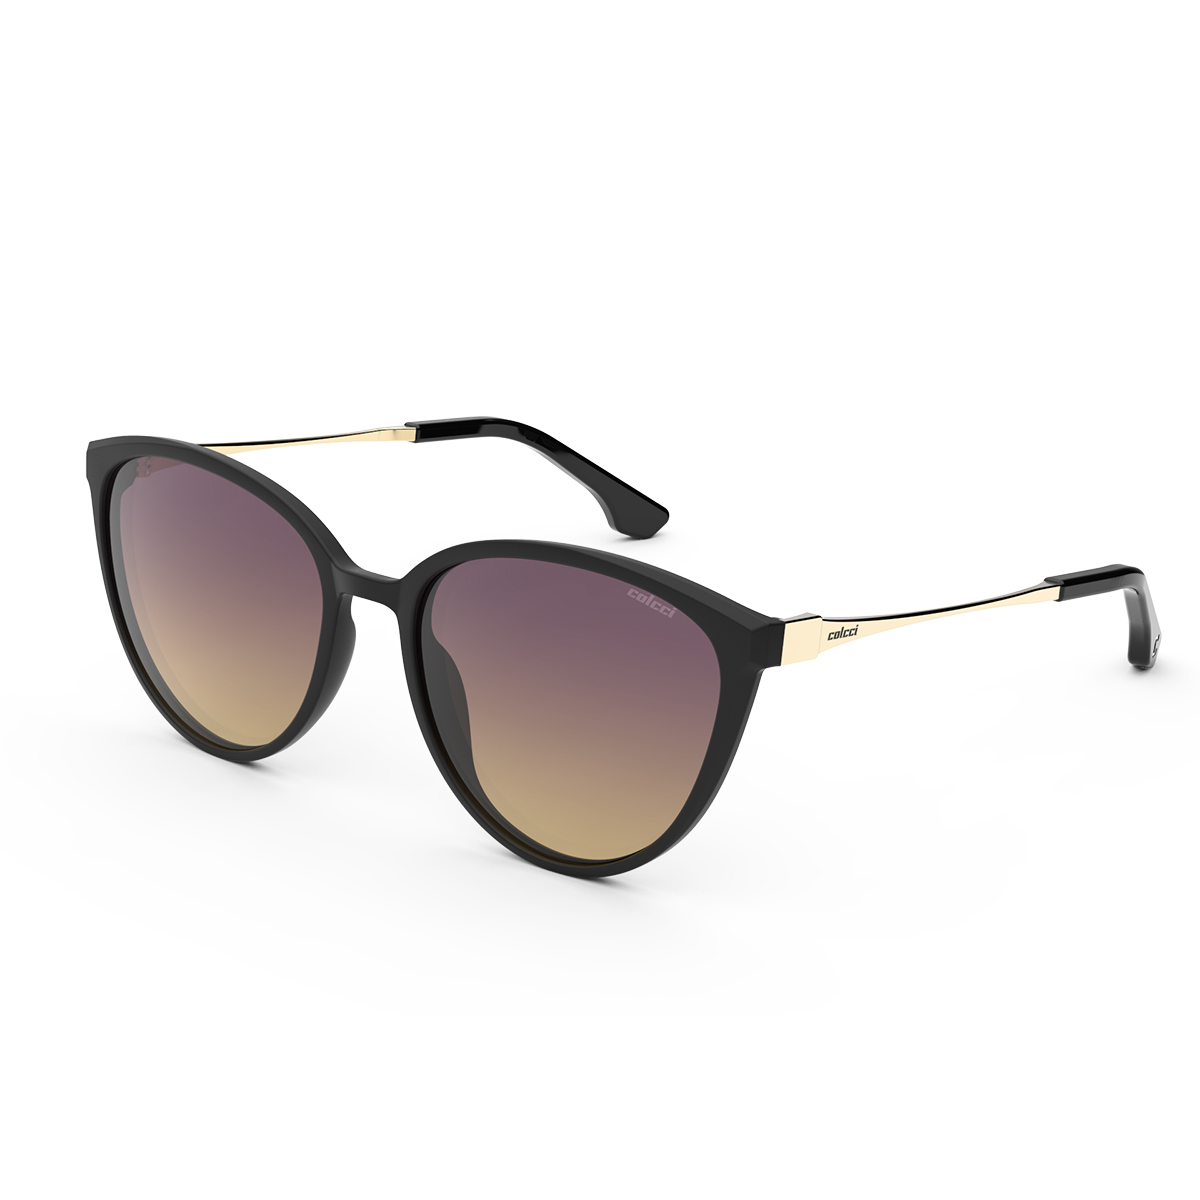 Óculos solar Colcci, designer exclusivo que revela tendências de moda que juntam conforto, elegância e modernidade